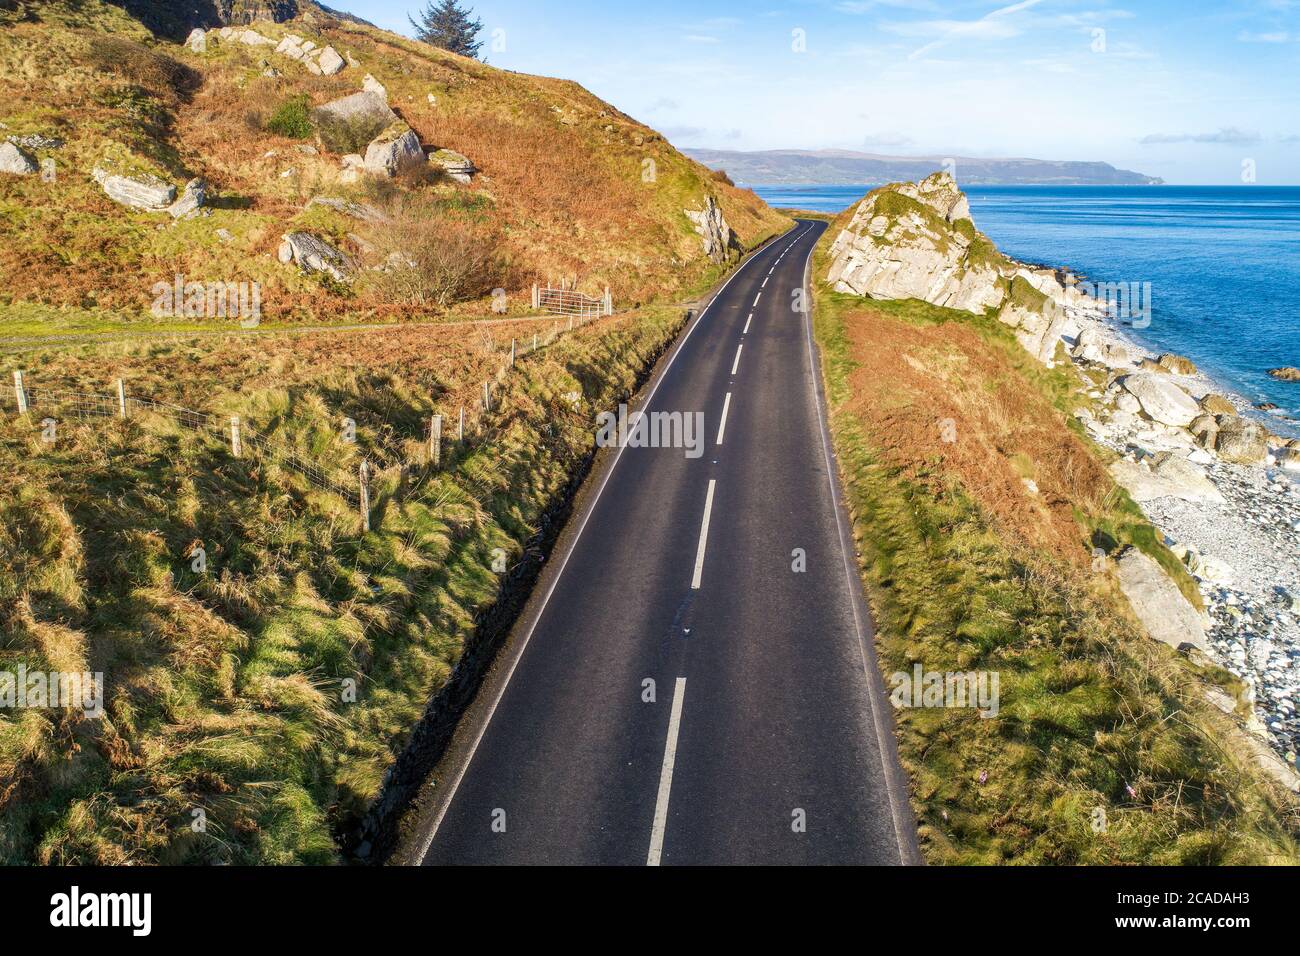 Causeway Coastal Route auch bekannt als Antrim Coast Road A2 an der Atlantikküste in Nordirland. Eine der malerischsten Küstenstraßen Europas. Antenne vi Stockfoto